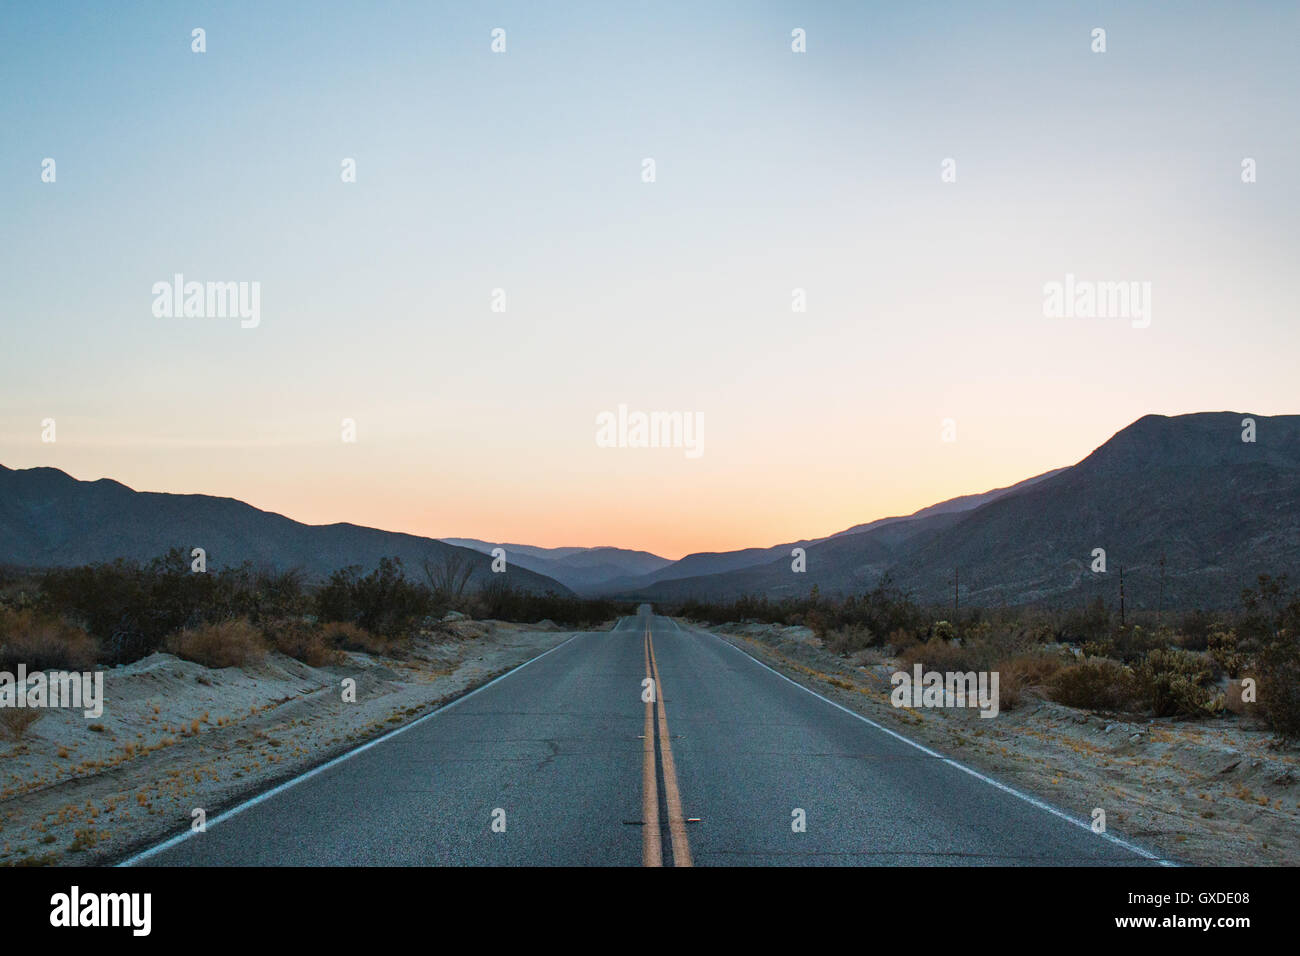 Aperta la strada di montagna al tramonto, Anza Borrego, CALIFORNIA, STATI UNITI D'AMERICA Foto Stock